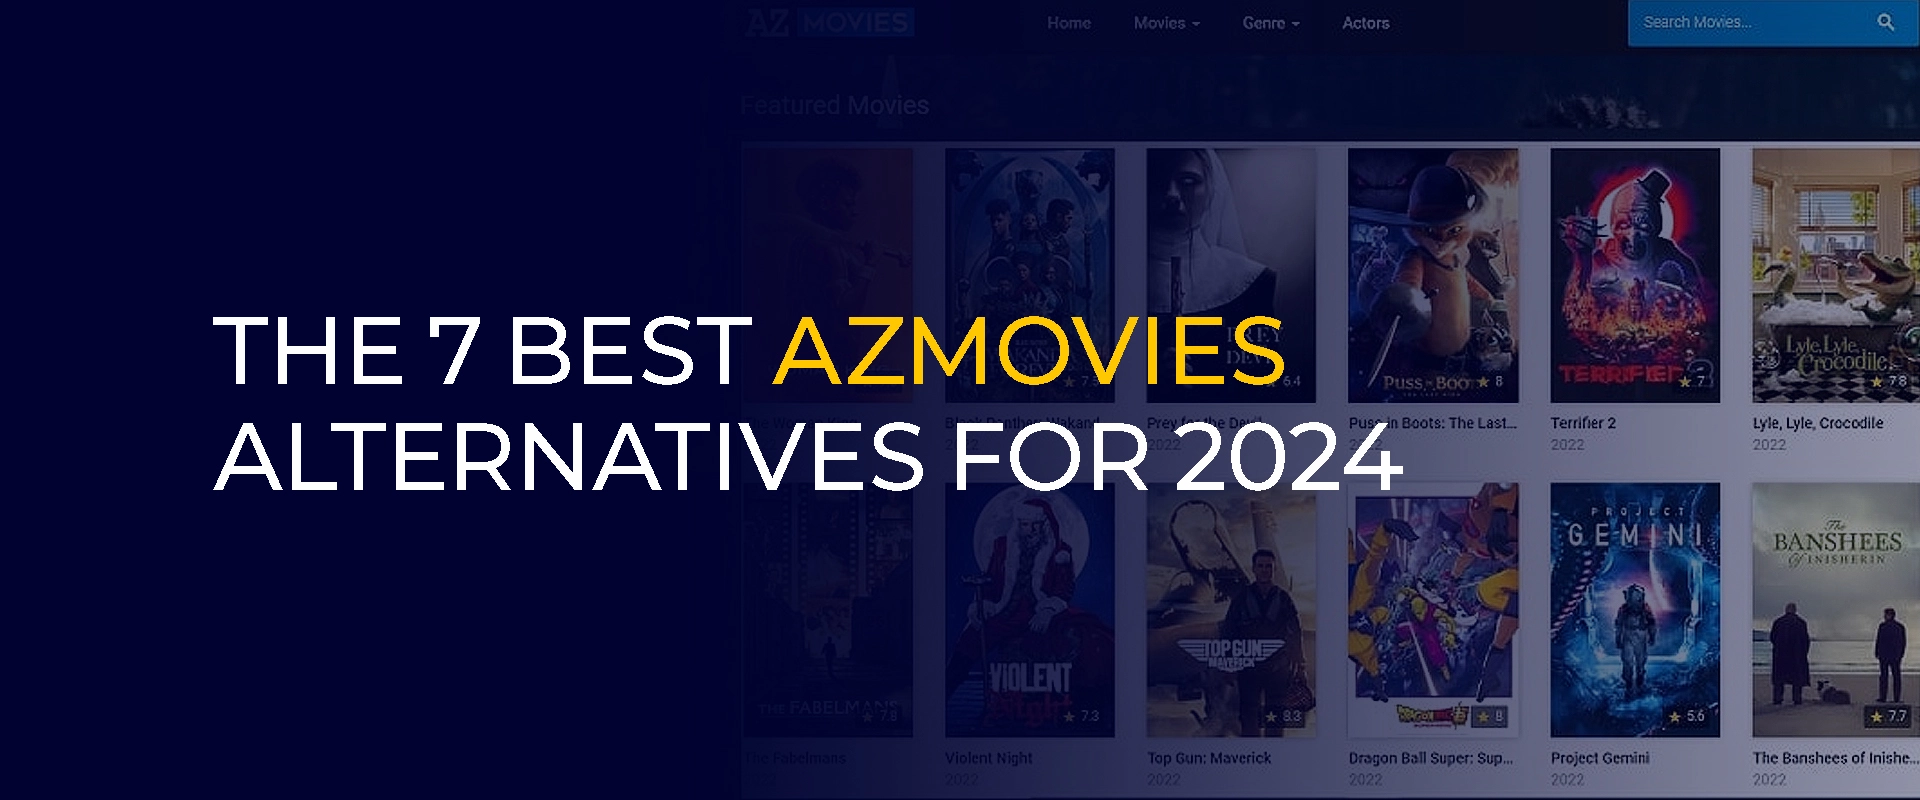 Les 7 meilleures alternatives Azmovies pour 2024